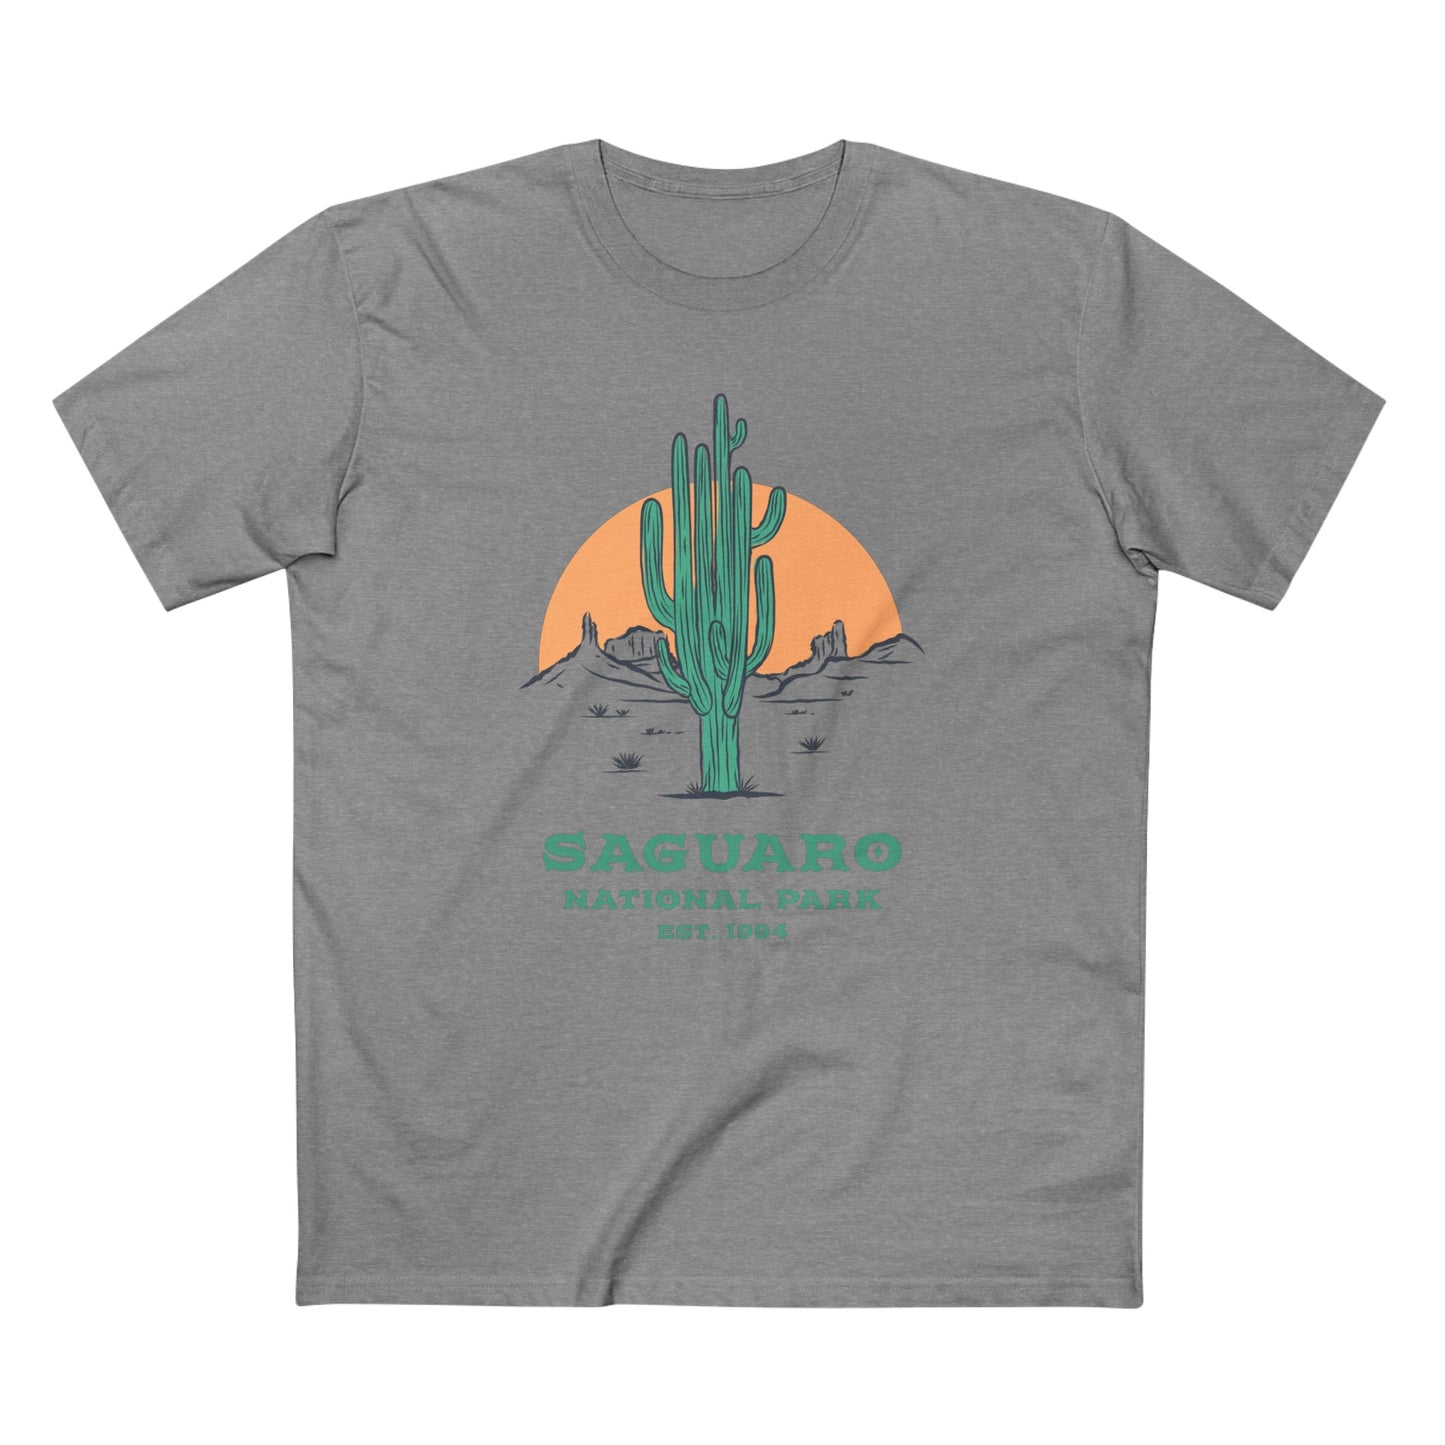 Saguaro National Park T-Shirt - Saguaro Cactus